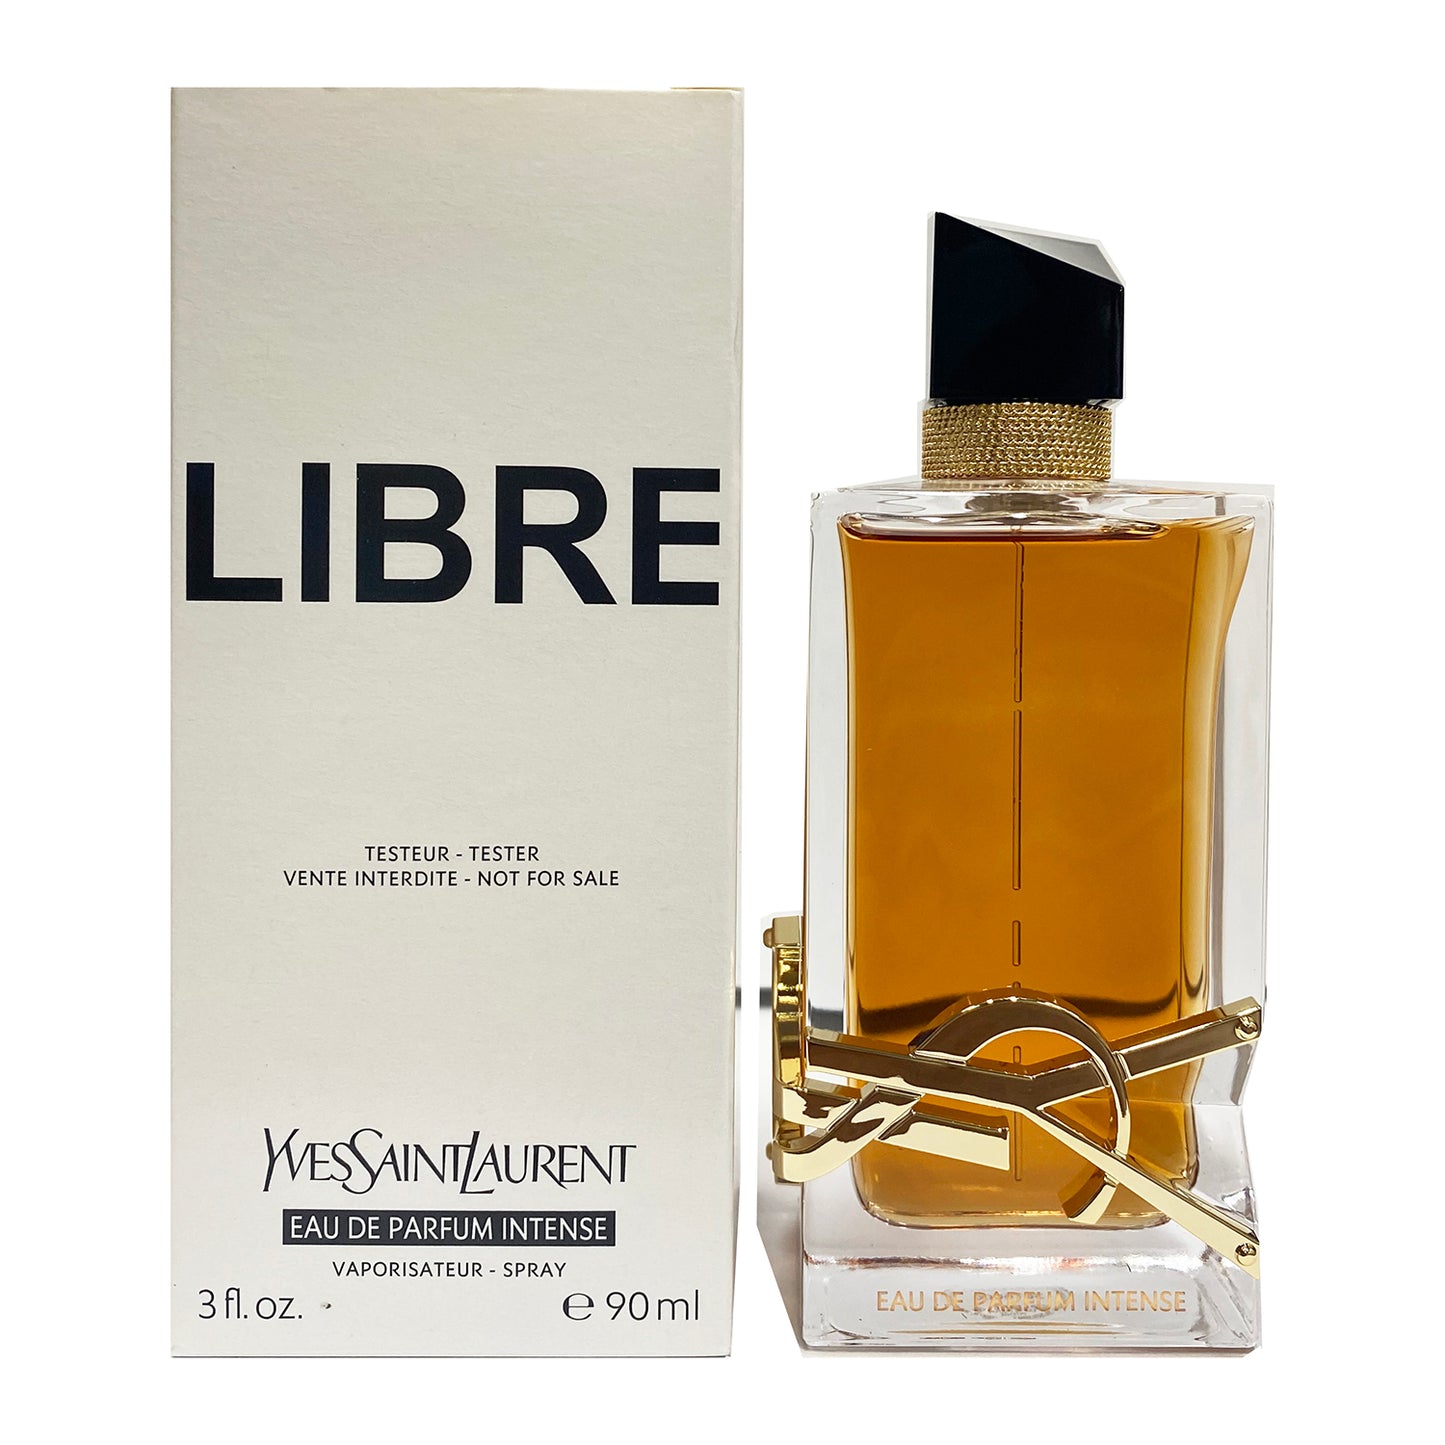 Yves Saint Laurent Libre Eau de parfum Intense 3.0 oz 90 ml TESTER in white box